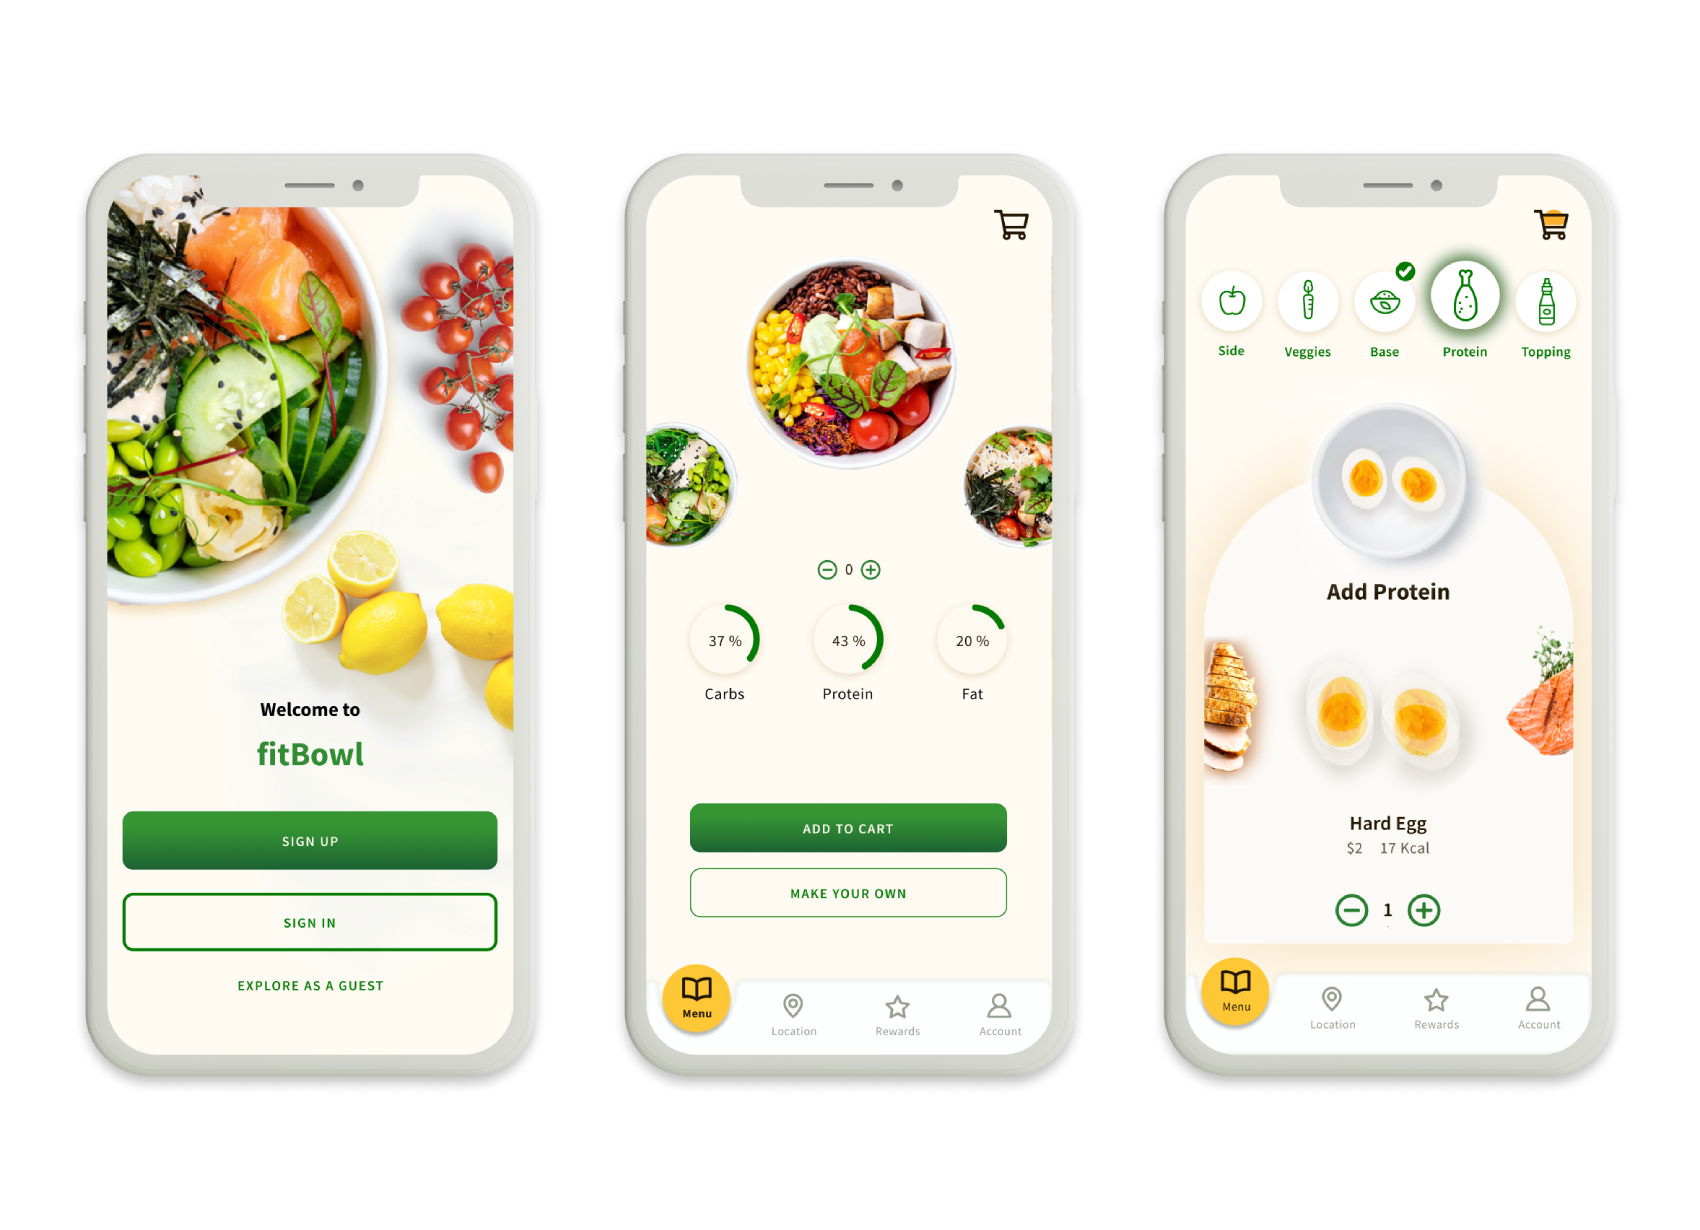 design mockup of a food app